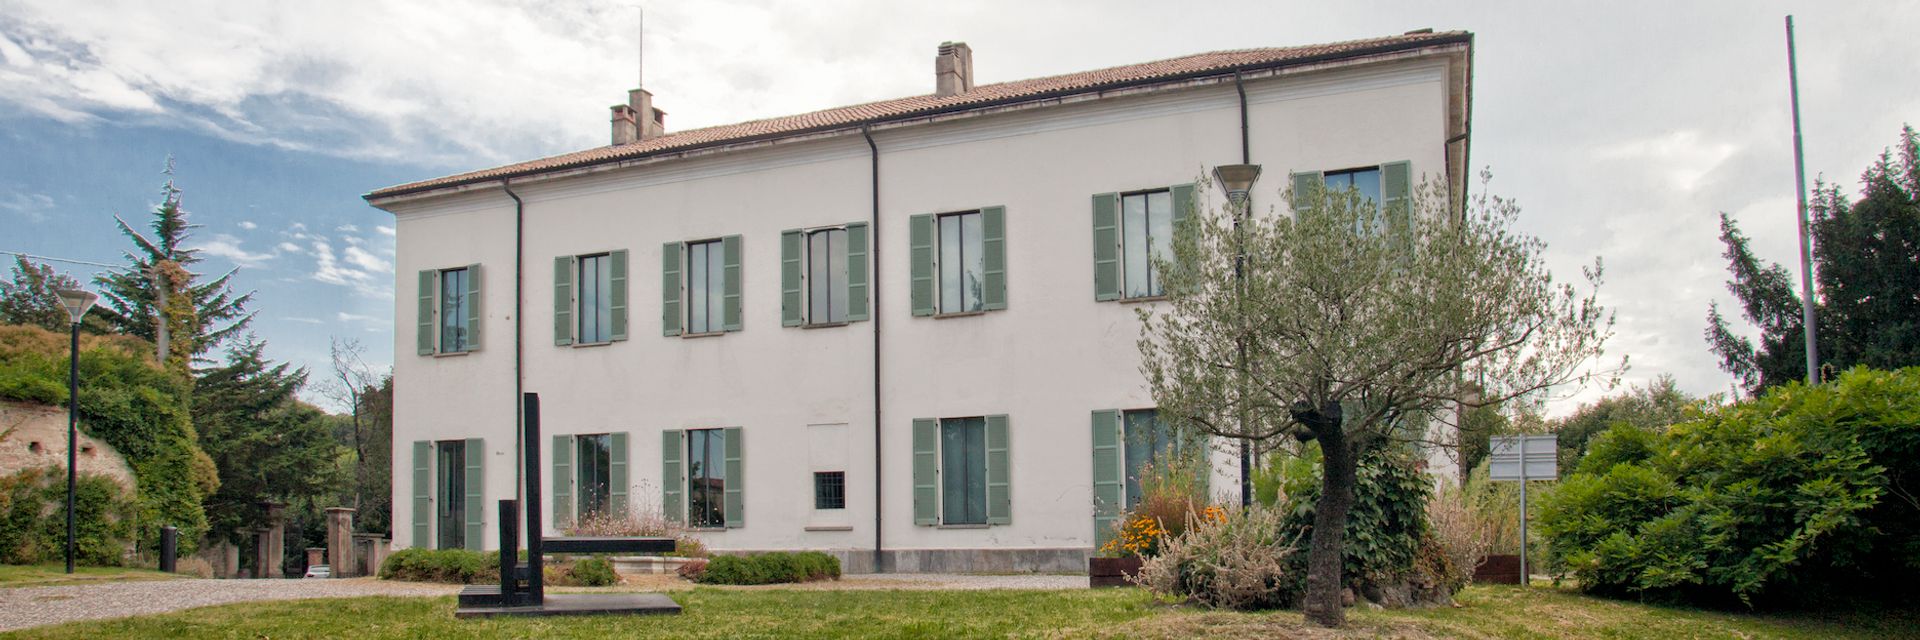 Museo Civico di Arte Moderna e Contemporanea - Castello Masnago